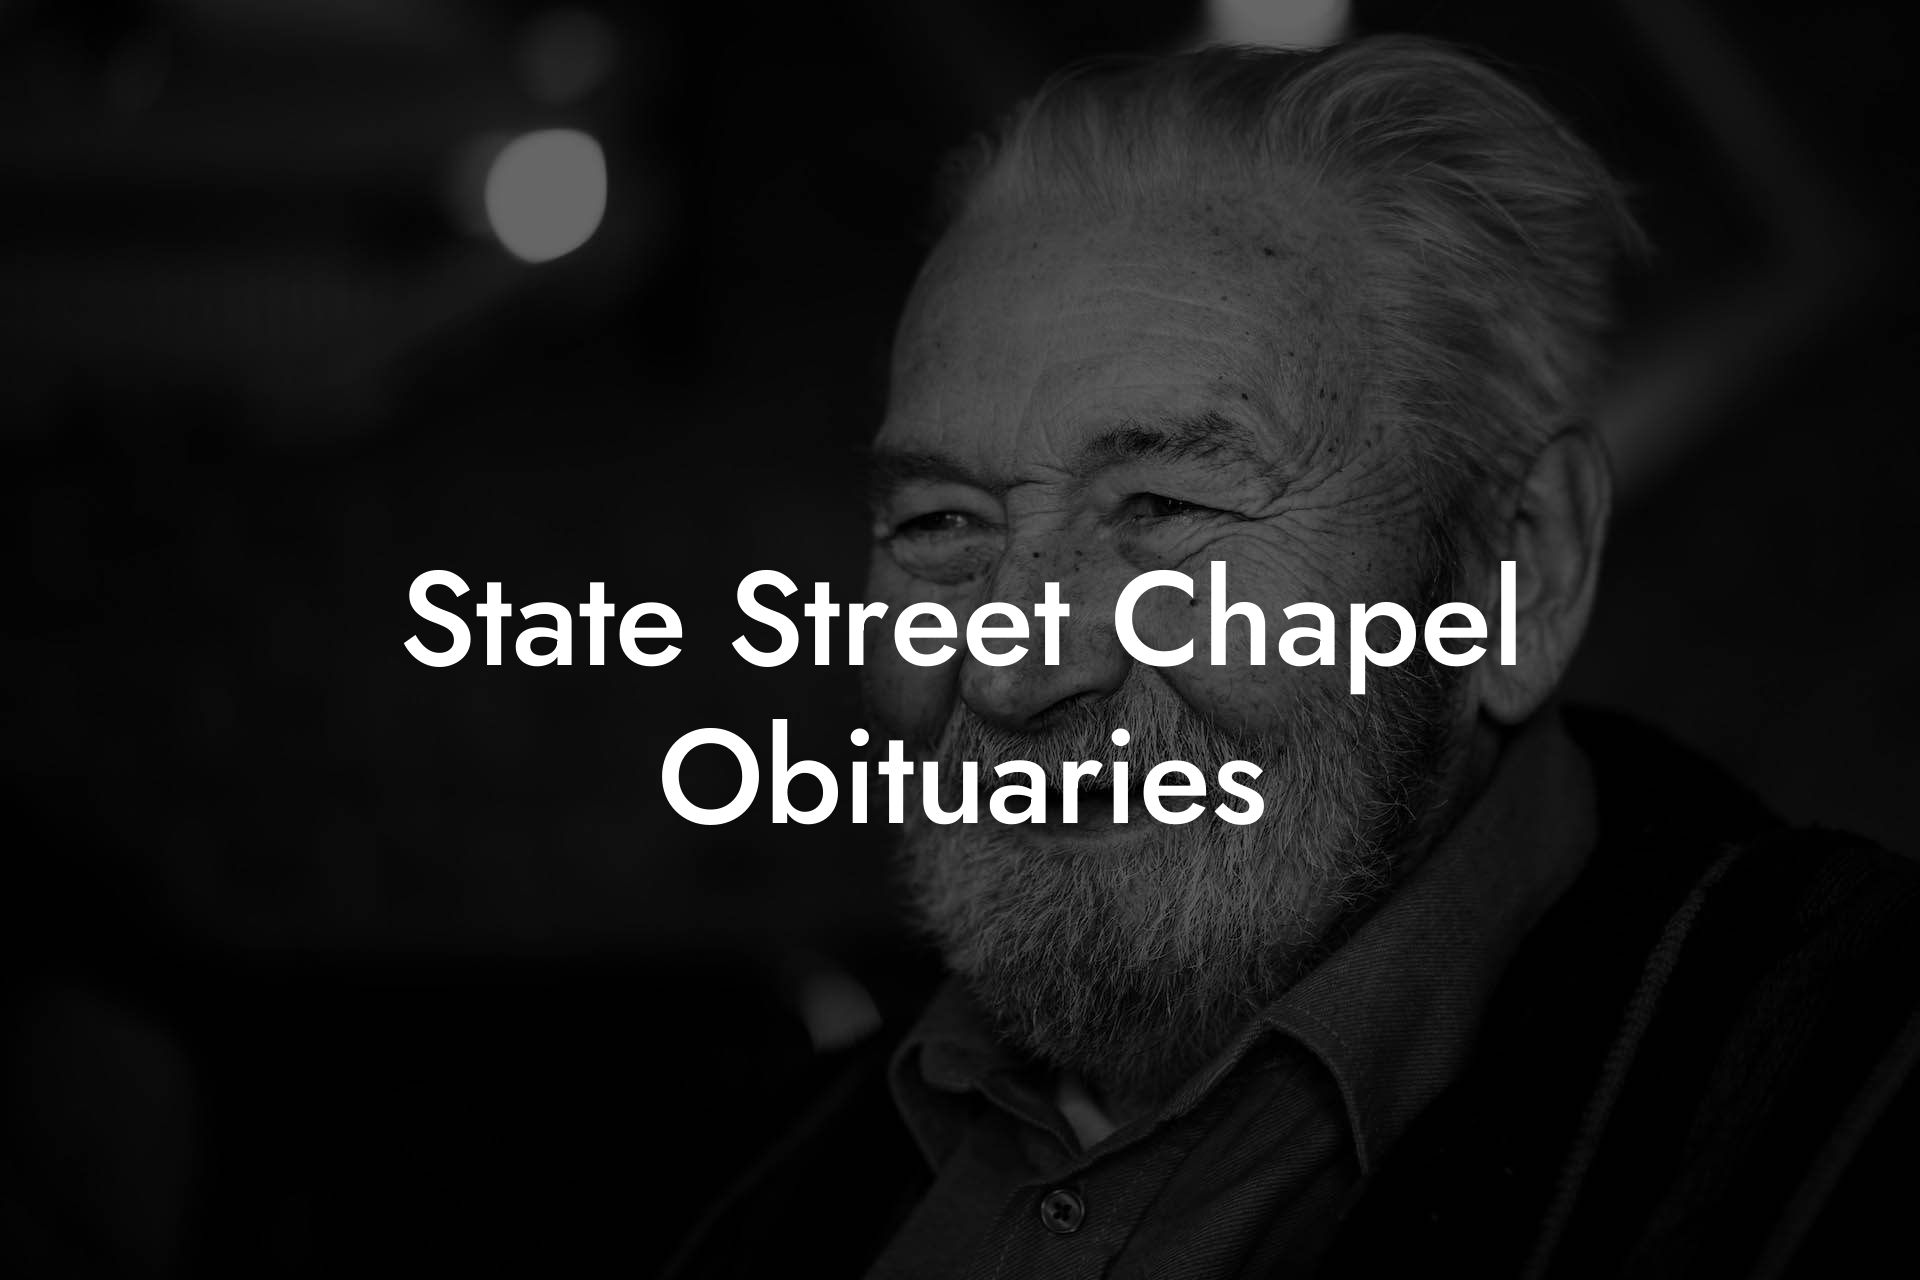 State Street Chapel Obituaries